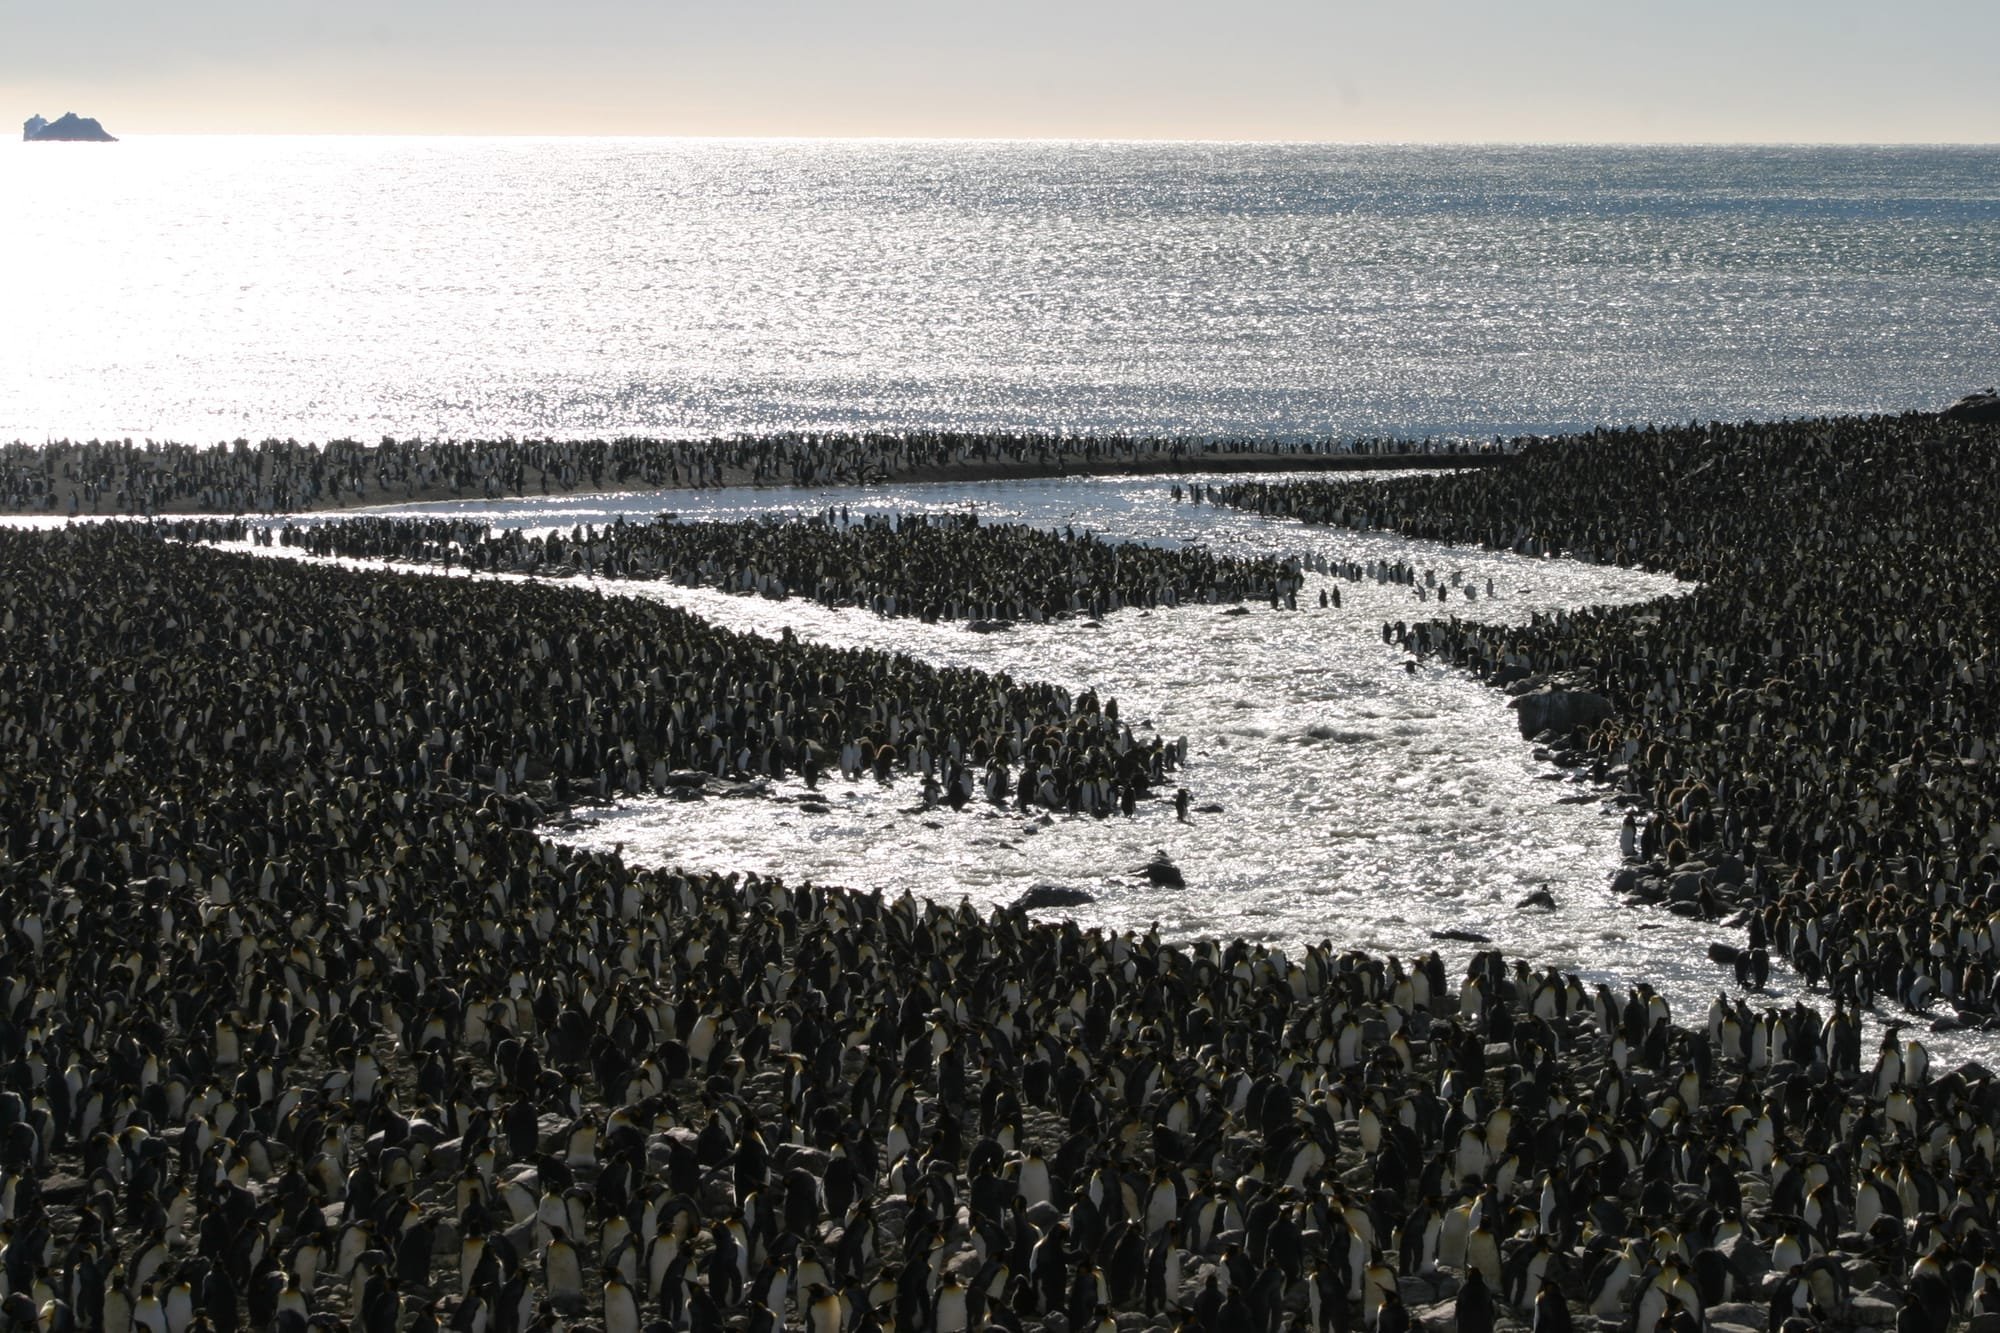 King Penguin Colony - 100,000 Birds